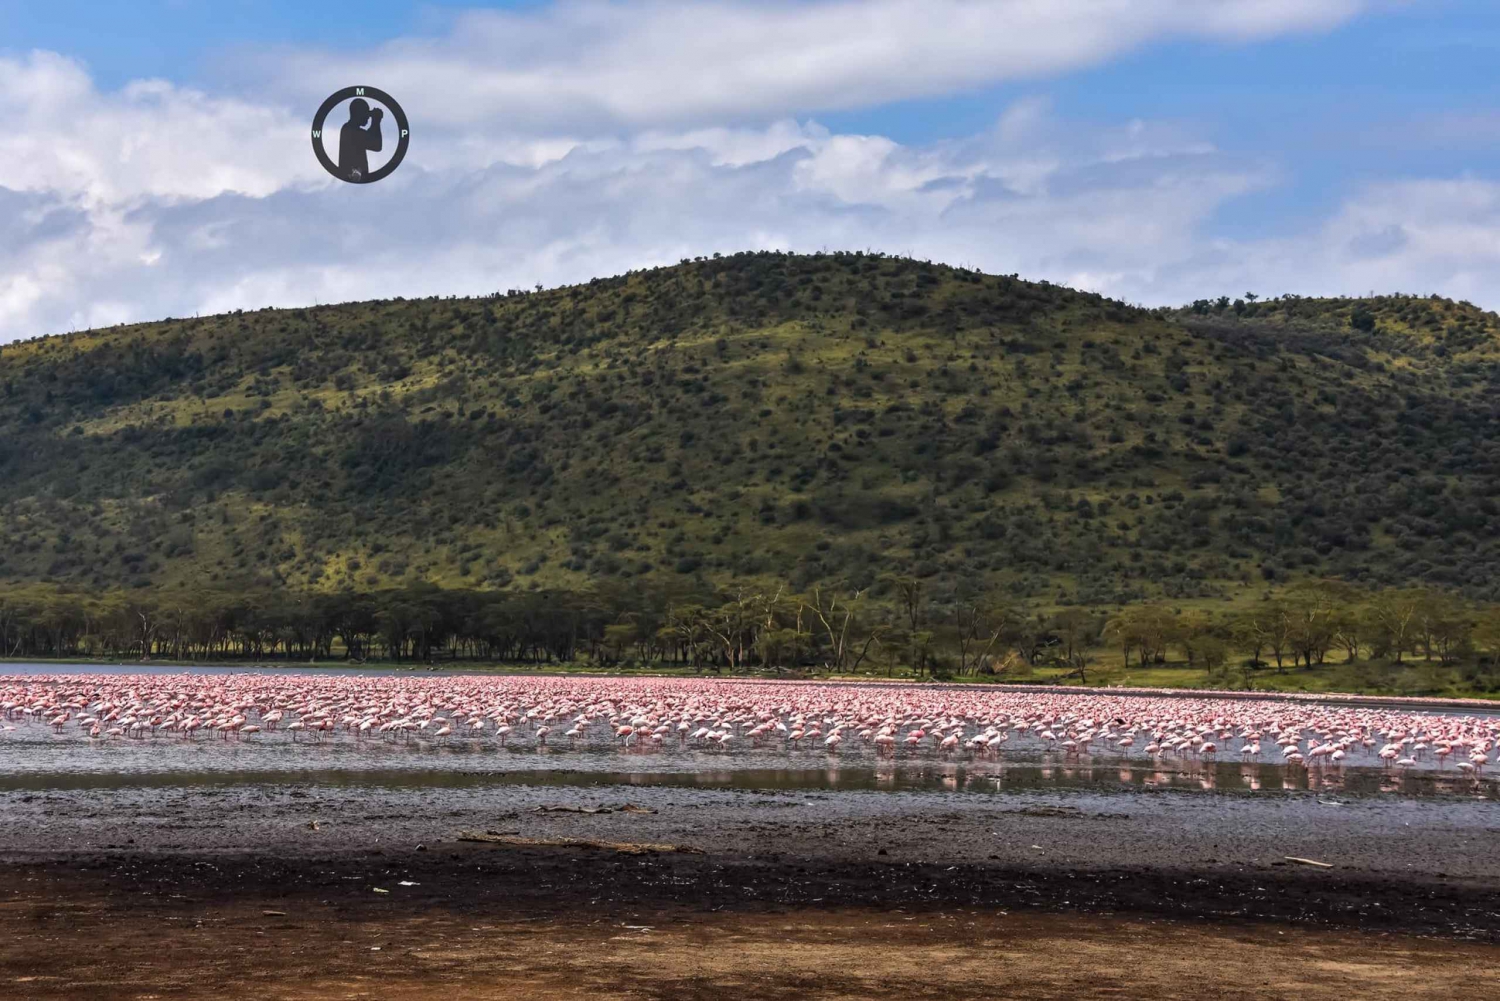 2 days Flamingo watching at Lake Bogoria and Lake Nakuru